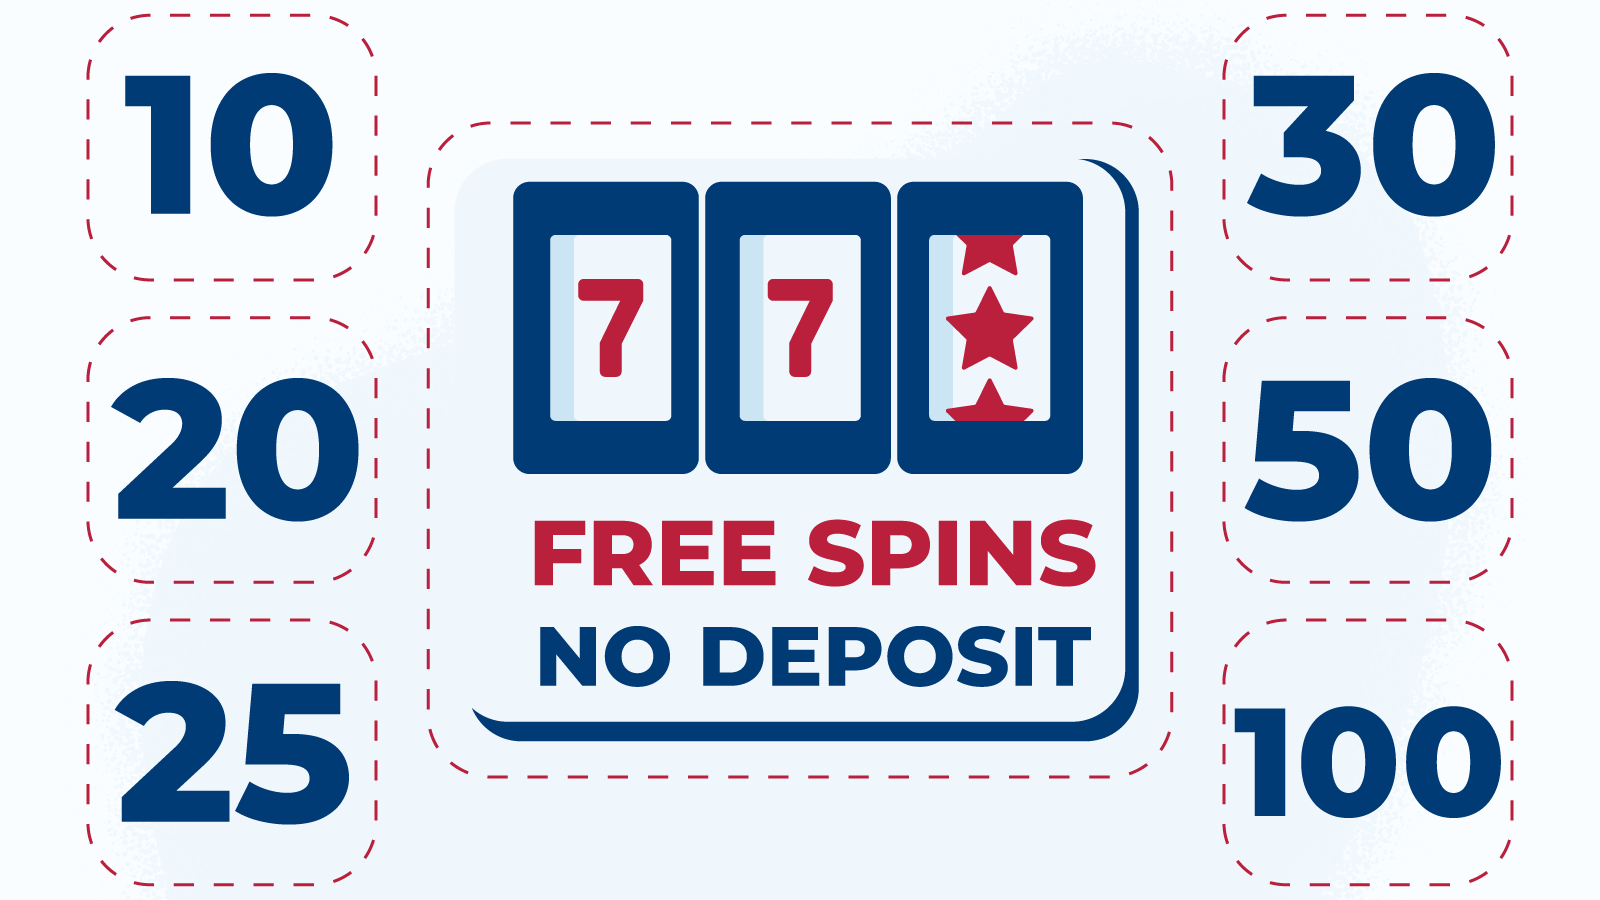 Types of free spins no deposit UK